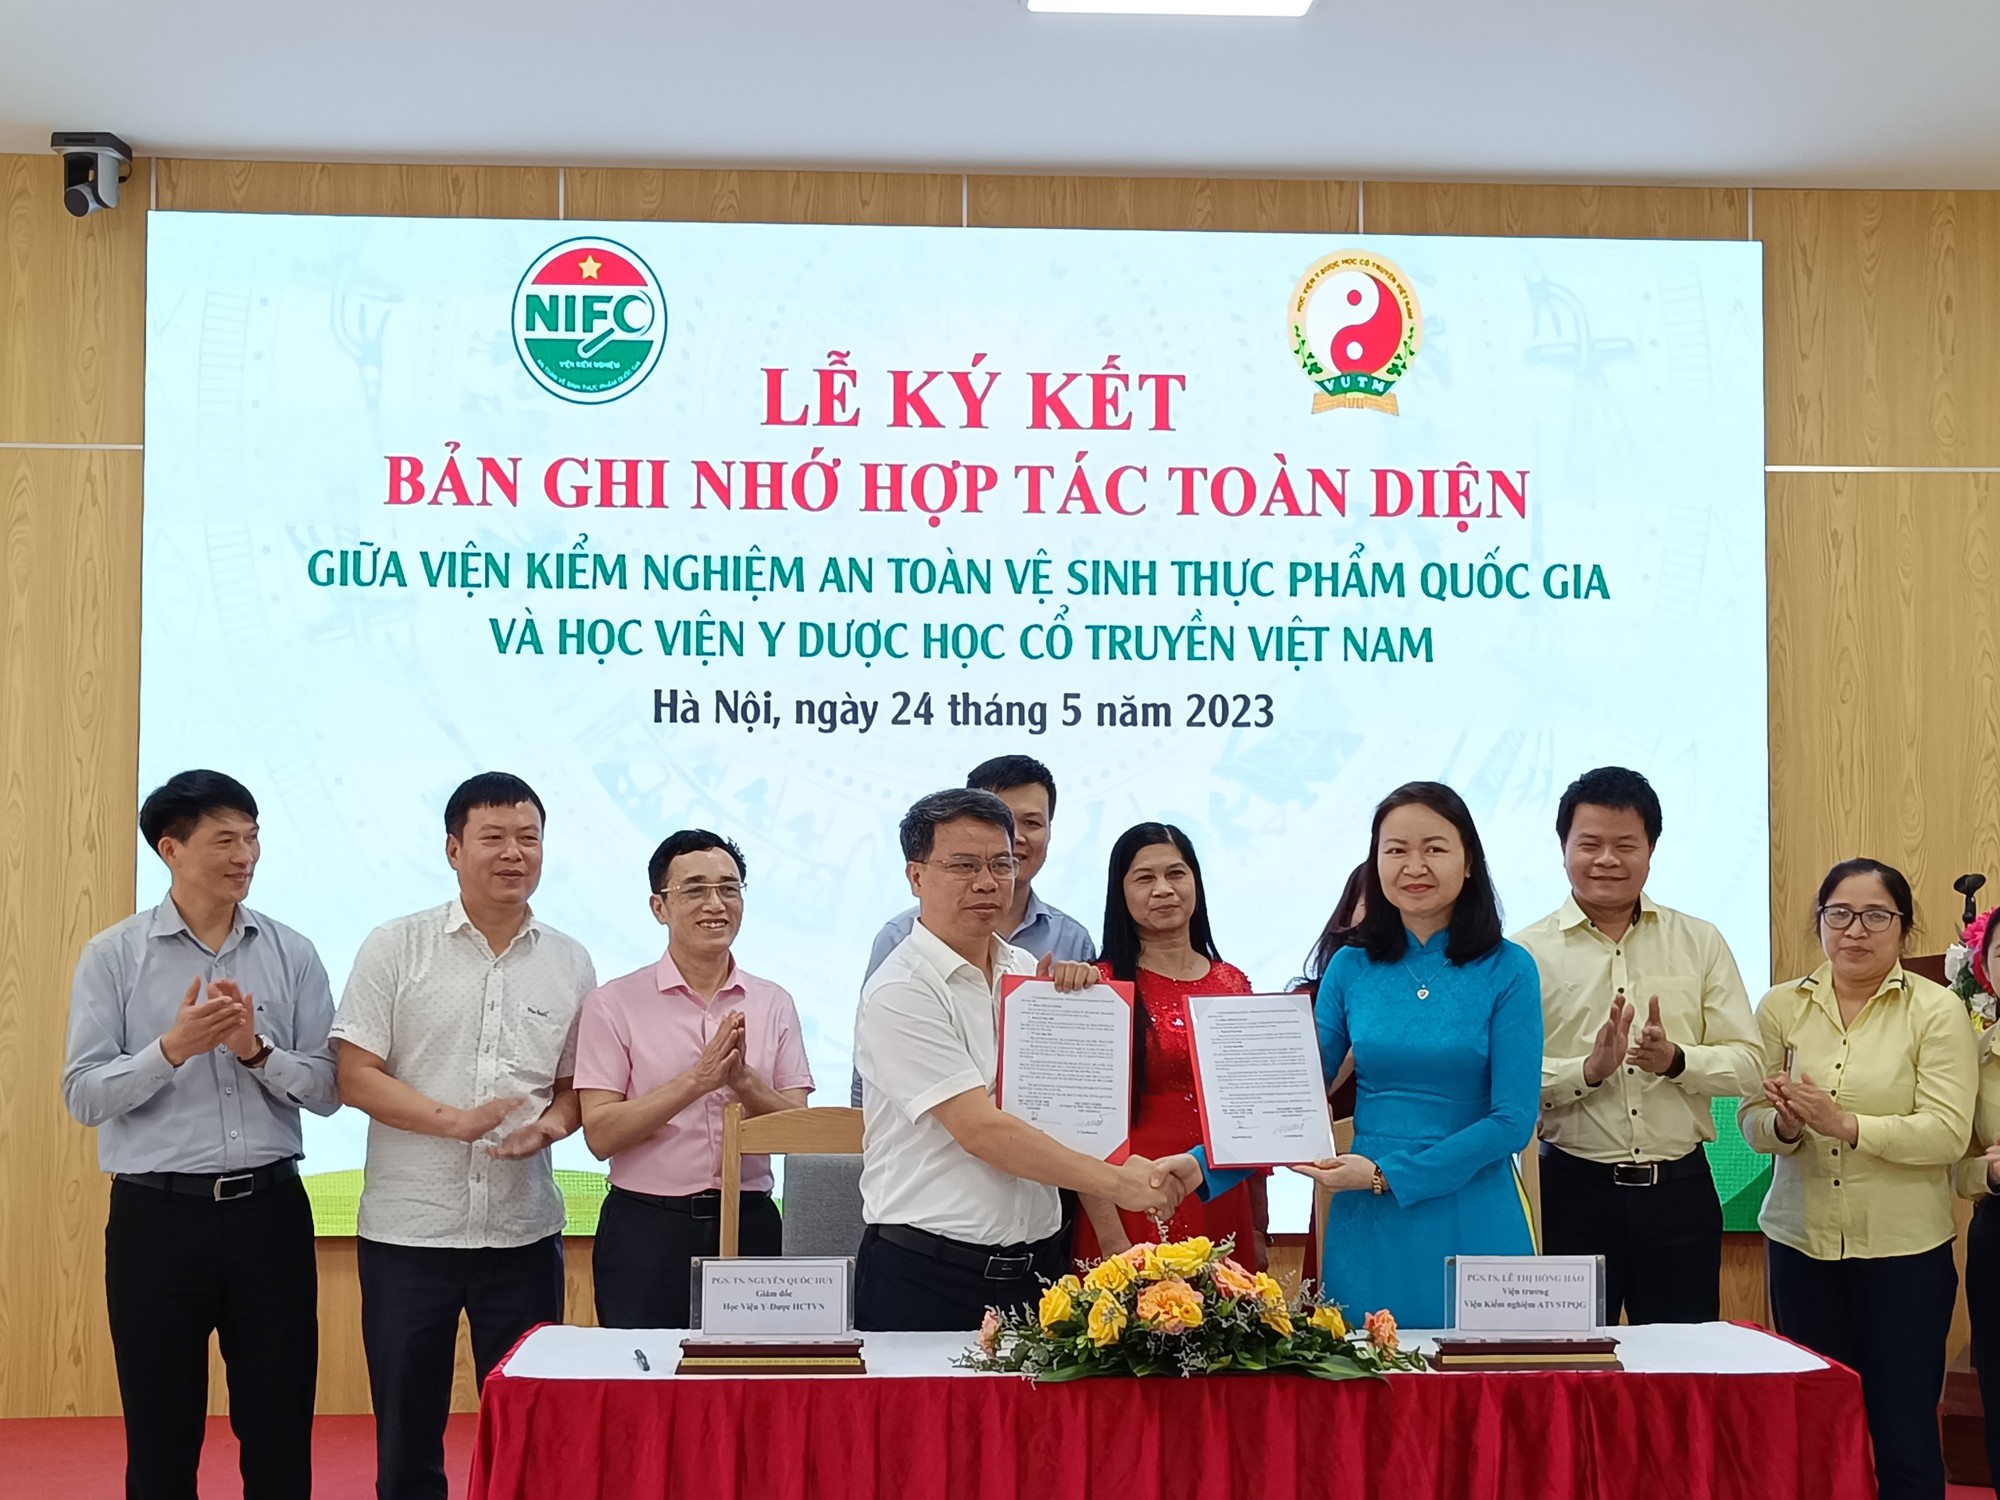 Viện Kiểm nghiệm an toàn vệ sinh thực phẩm Quốc gia và Học viện Y Dược học cổ truyền Việt Nam ký kết hợp tác - Ảnh 1.